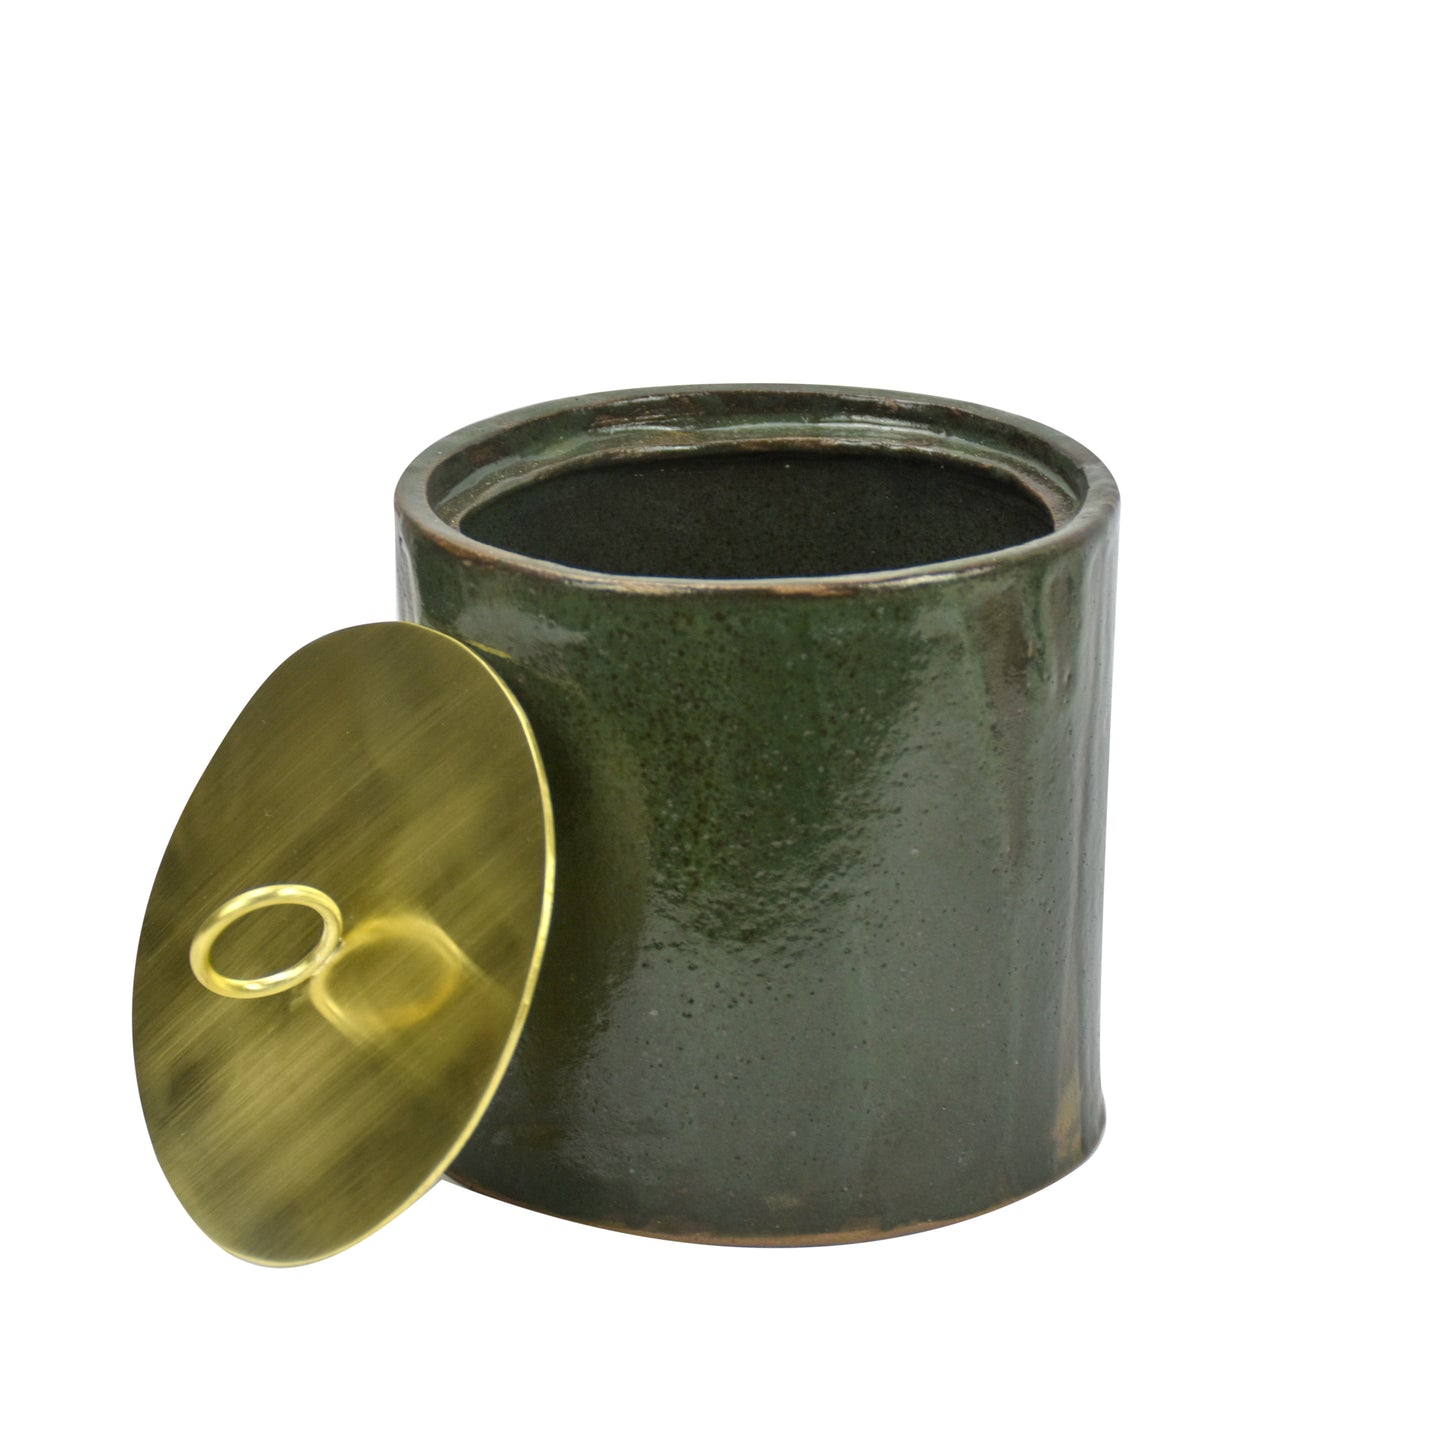 Pote de cerâmica verde com tampa de latão